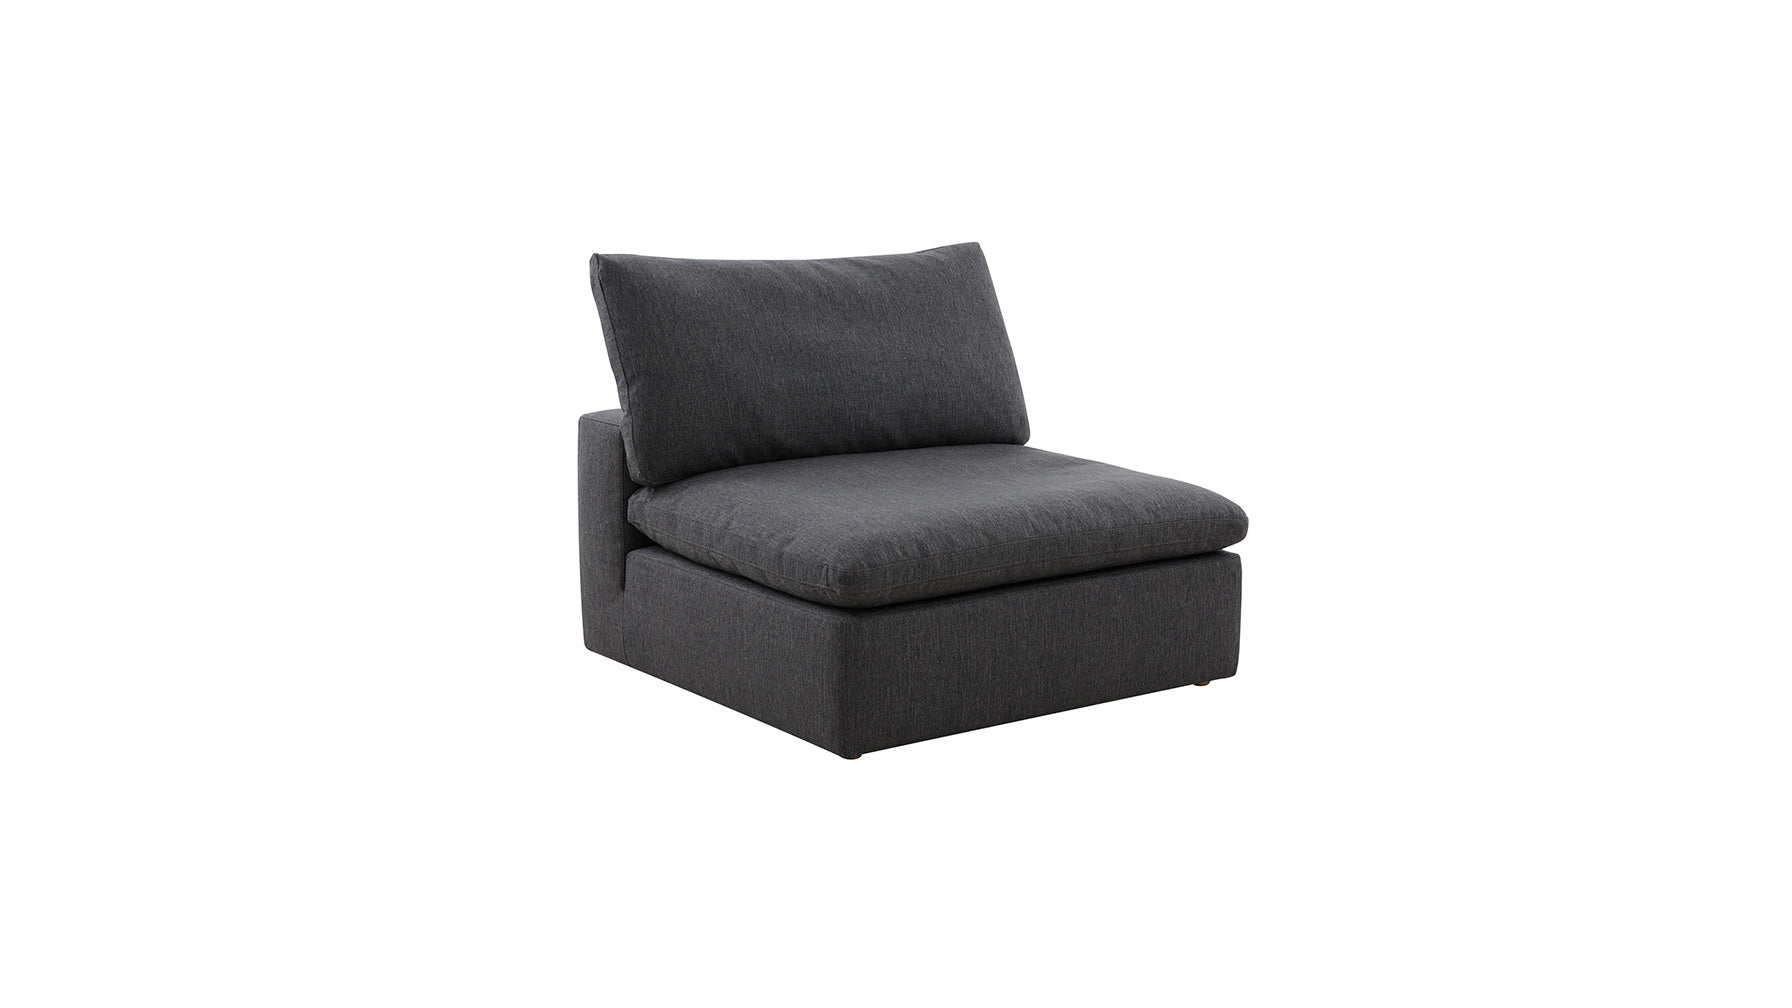 Movie Night™ Armless Chair, Large, Dark Shadow - Image 5